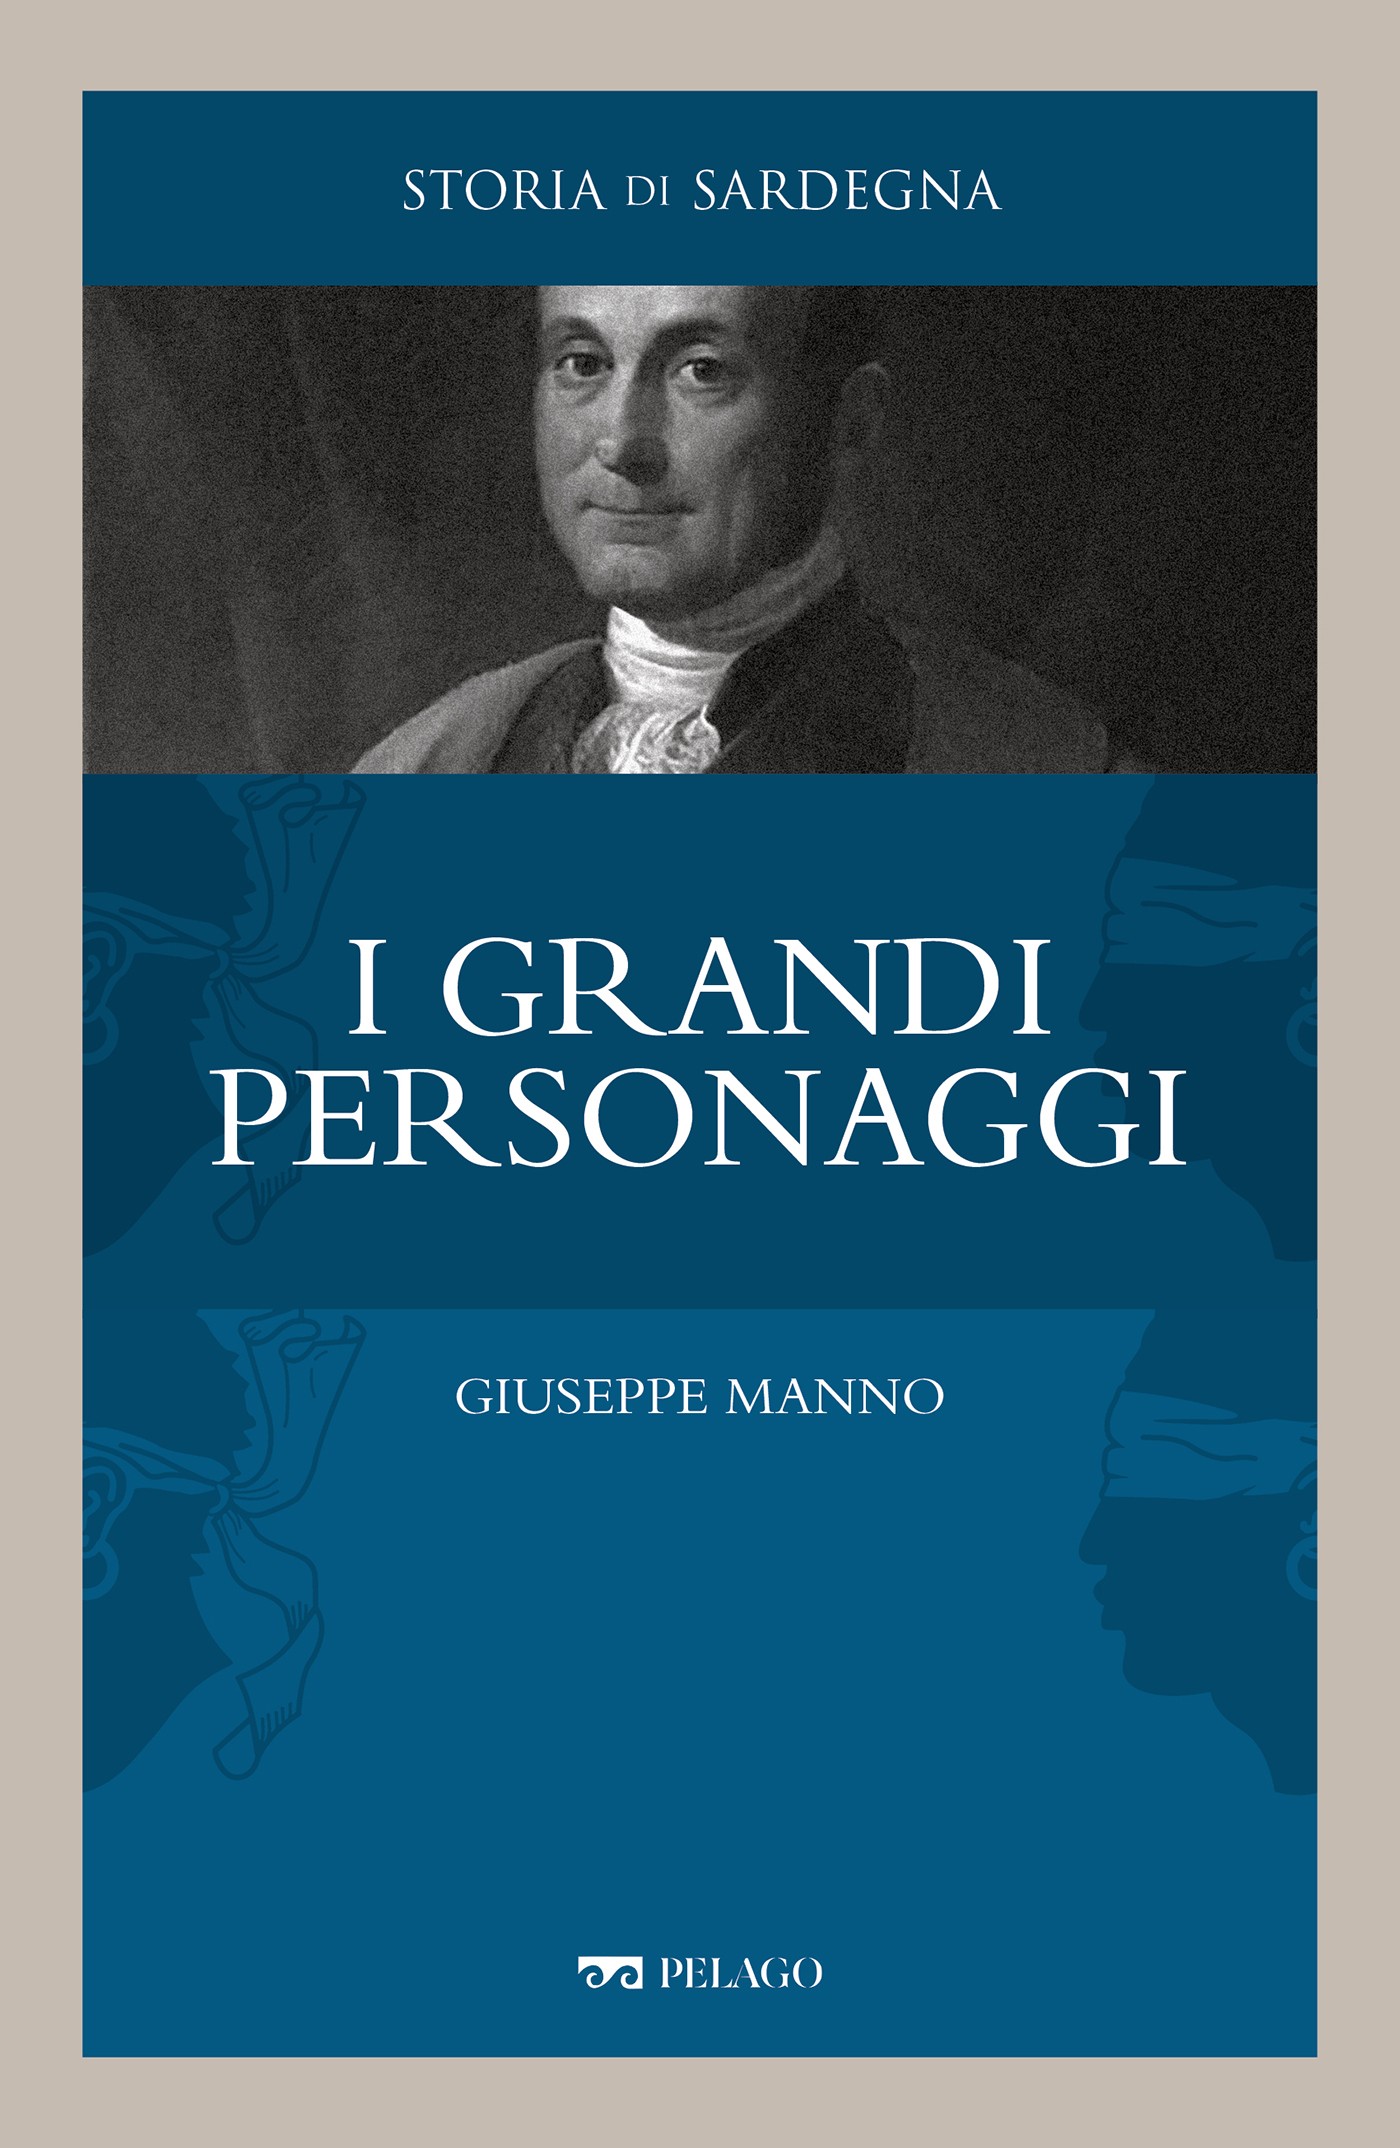 Giuseppe Manno - Librerie.coop